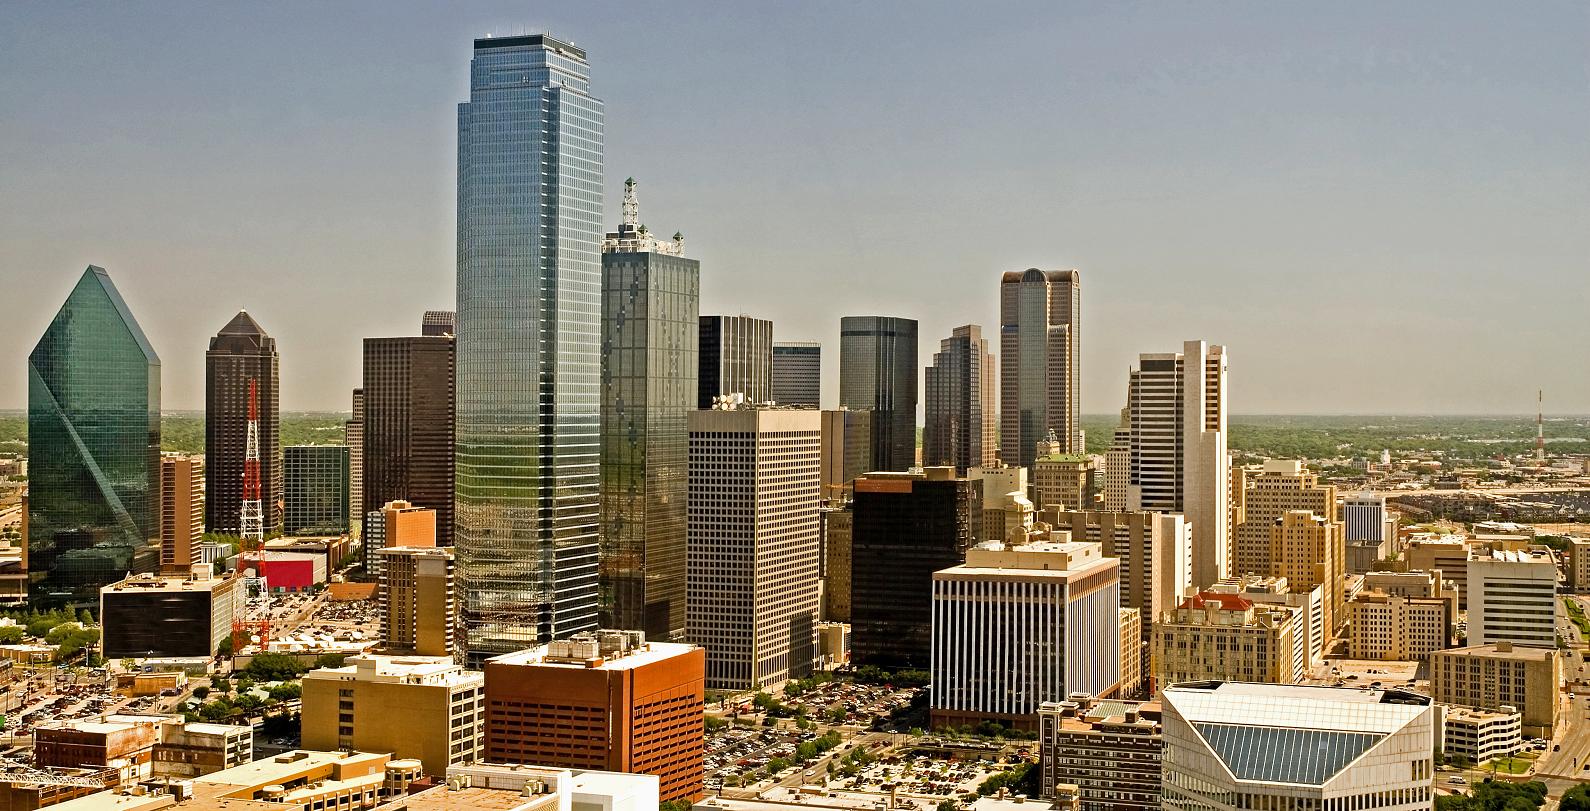 Closer view of Dallas' skyline